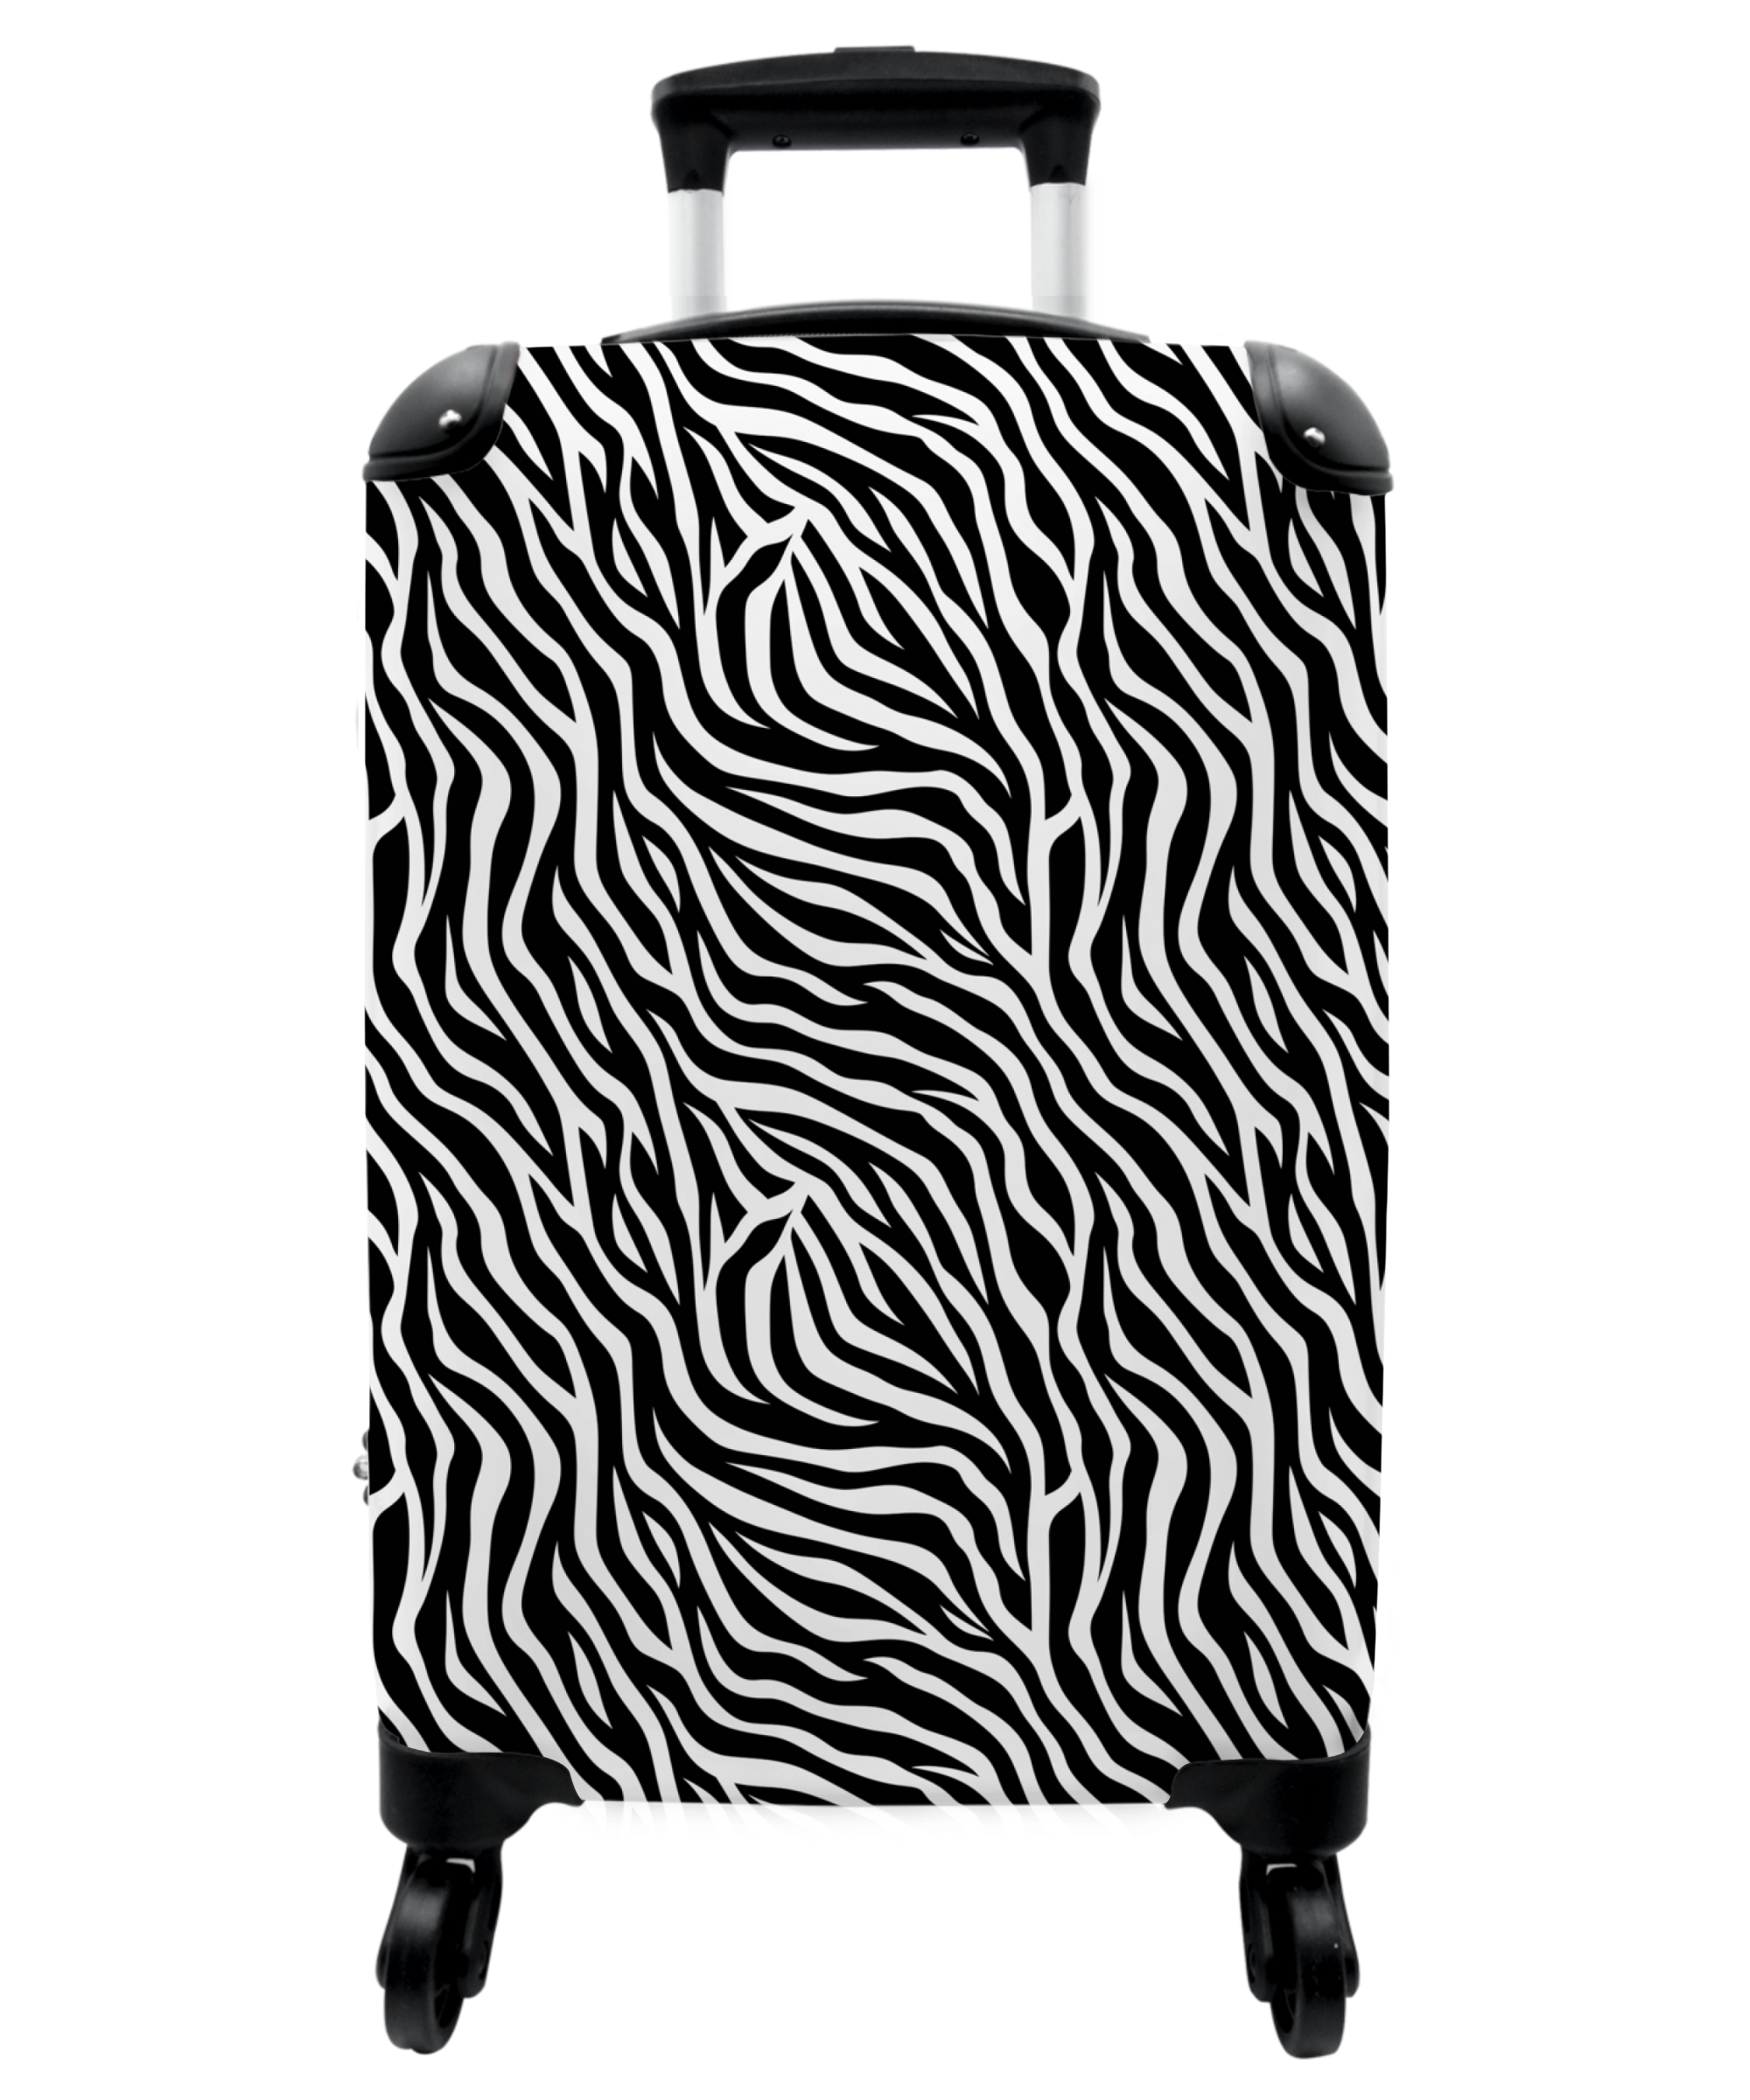 Koffer - Dierenprint - Zebra - Design - Zwart wit